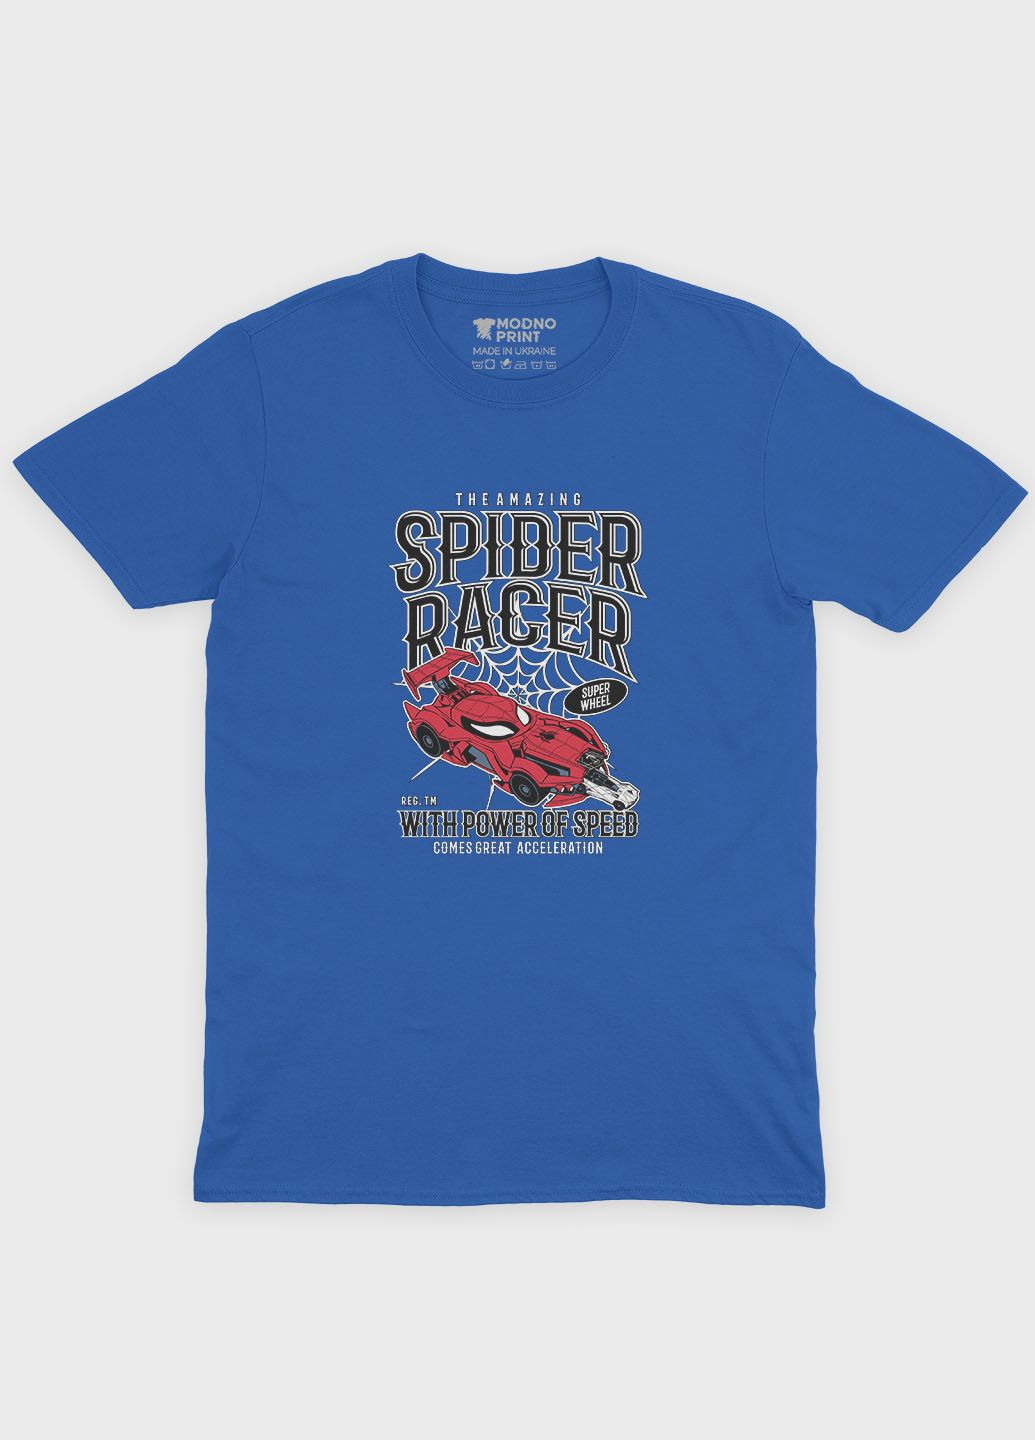 Синяя демисезонная футболка для мальчика с принтом супергероя - человек-паук (ts001-1-brr-006-014-071-b) Modno